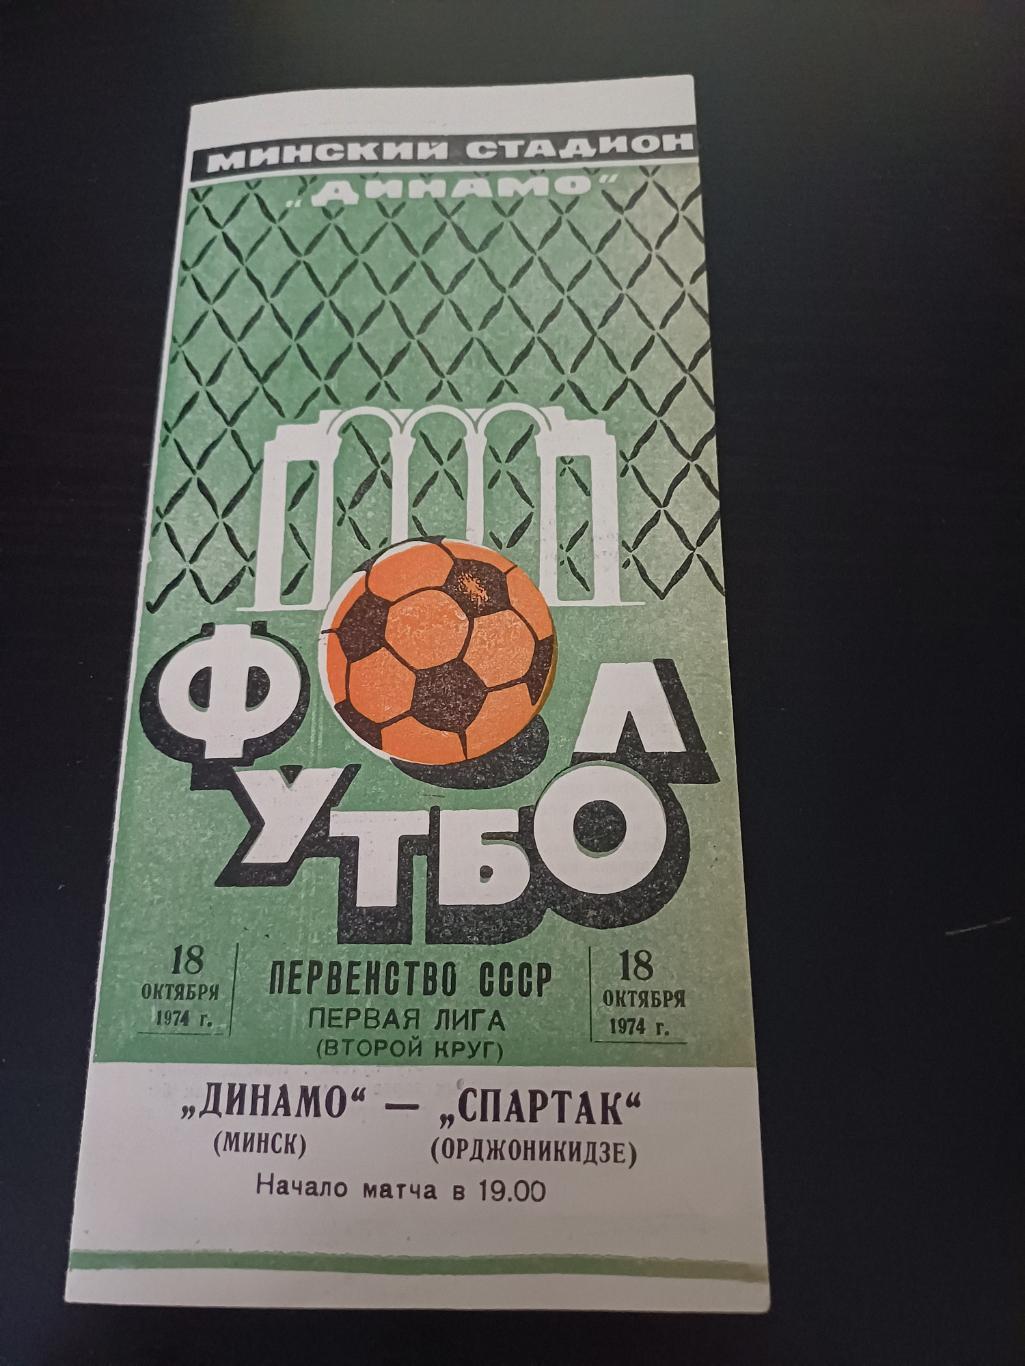 Динамо (Минск) - Спартак (Орджоникидзе) 1974